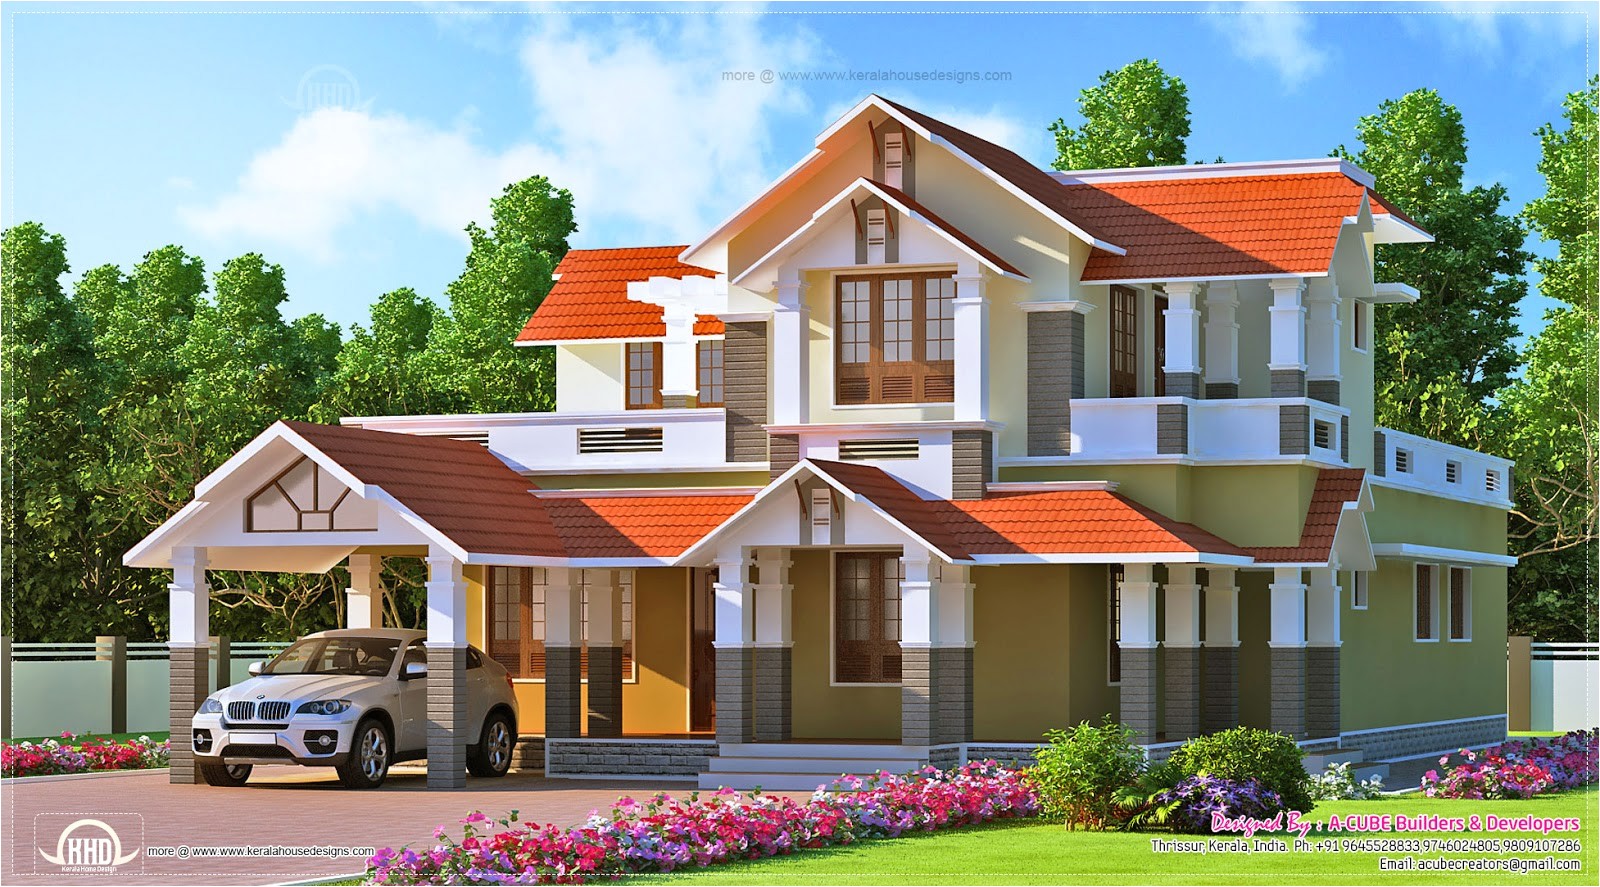 kerala style dream home design in 2900